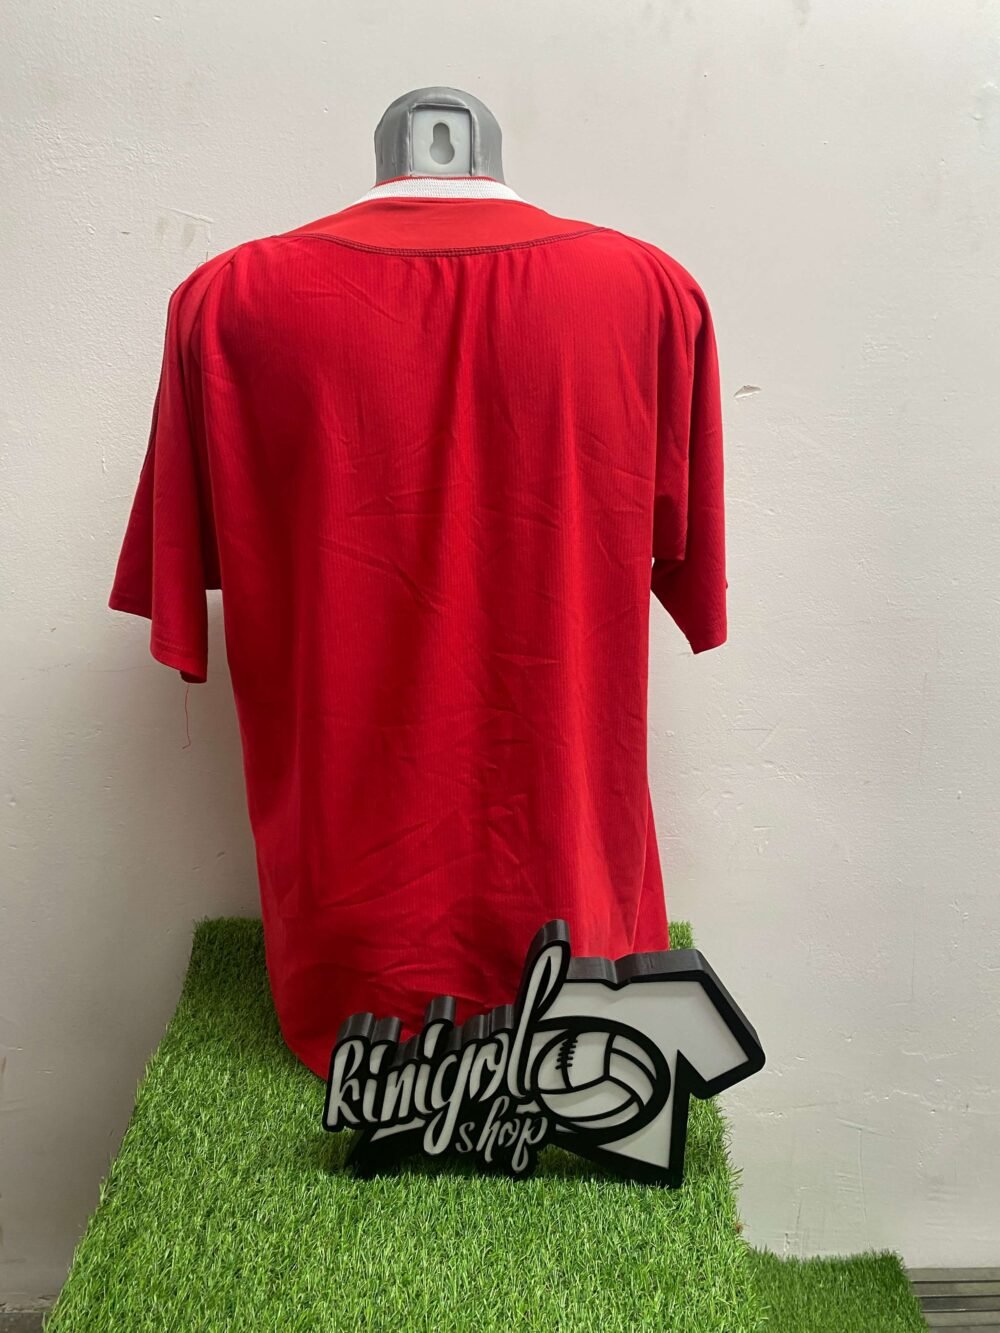 Camiseta-liverpool2-2002-kinigolshop-madrid